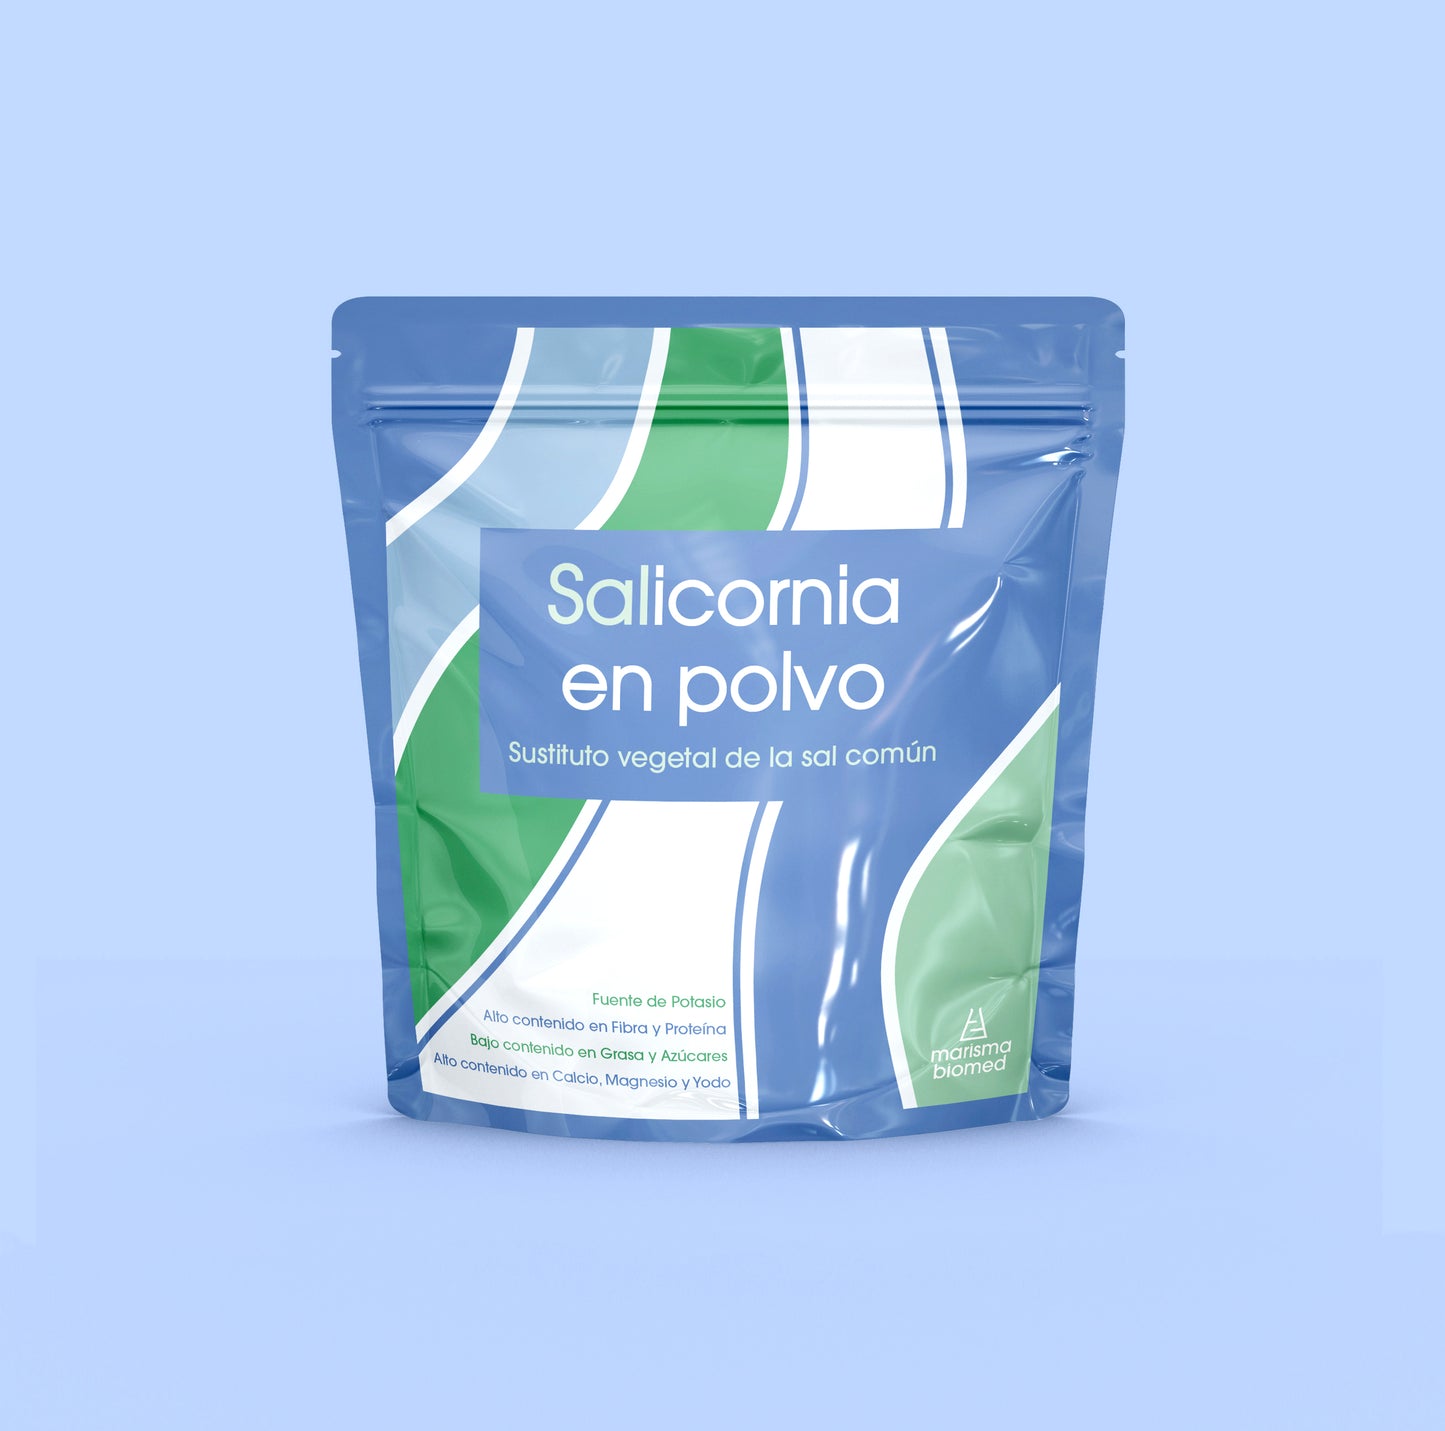 Cara delantera del packaging del producto Salicornia en polvo de Marisma Biomed. Fondo azul.